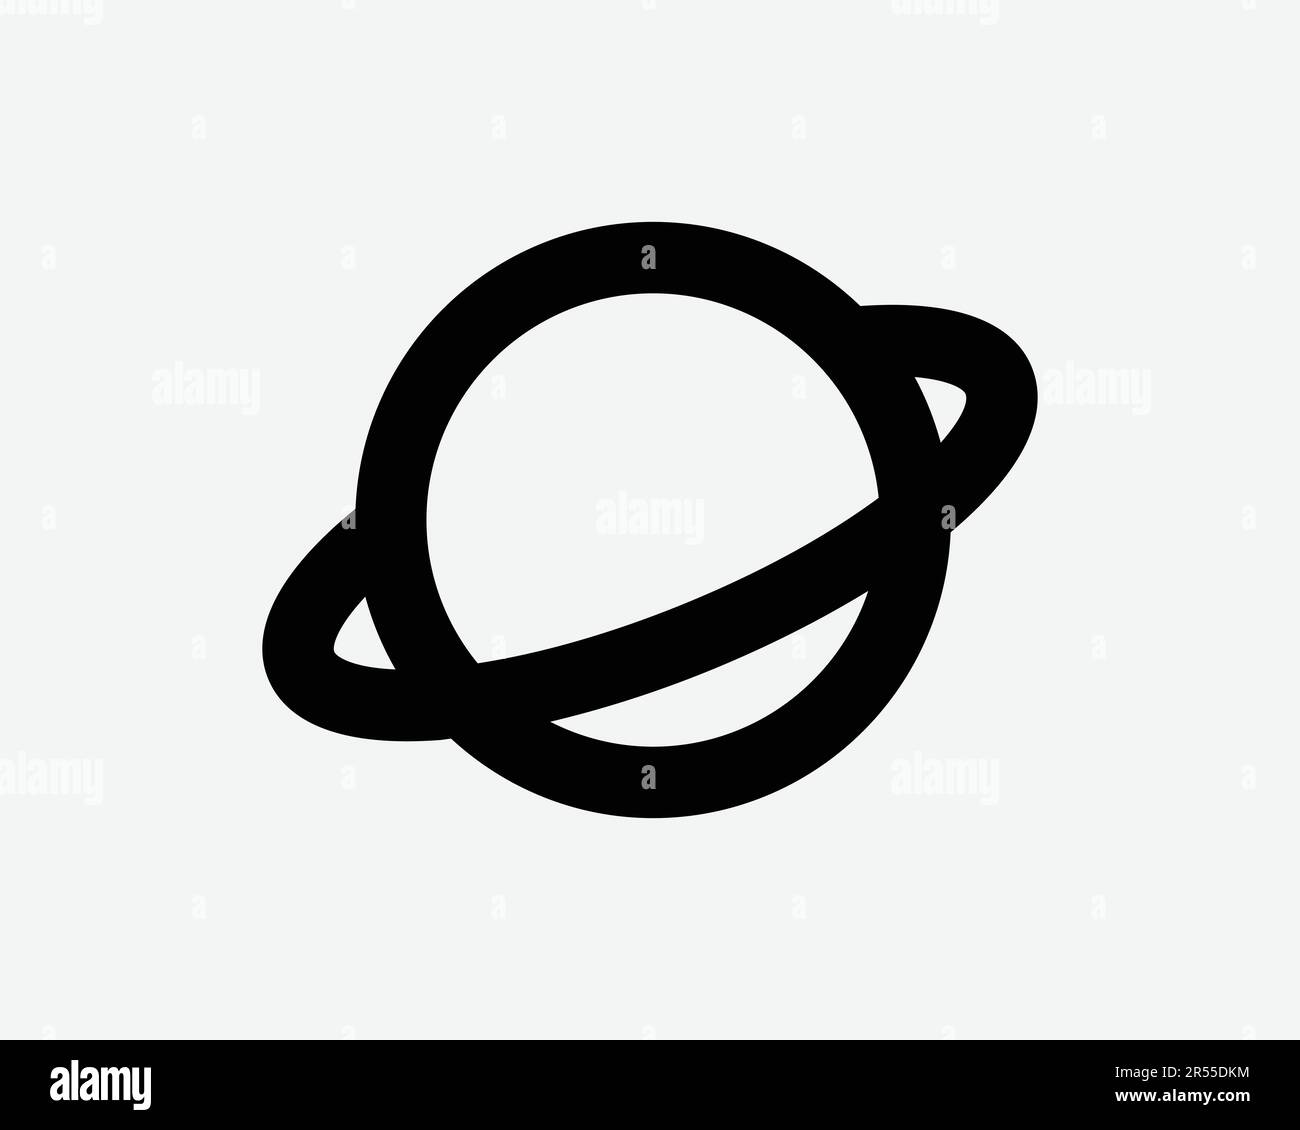 Planetensymbol Sonnensystem Astronomie Universum Saturn Jupiter Uranus Neptune Ring Space Sign Symbol Schwarze Kunstwerke Grafik Illustration Clipart EPS Vektor Stock Vektor